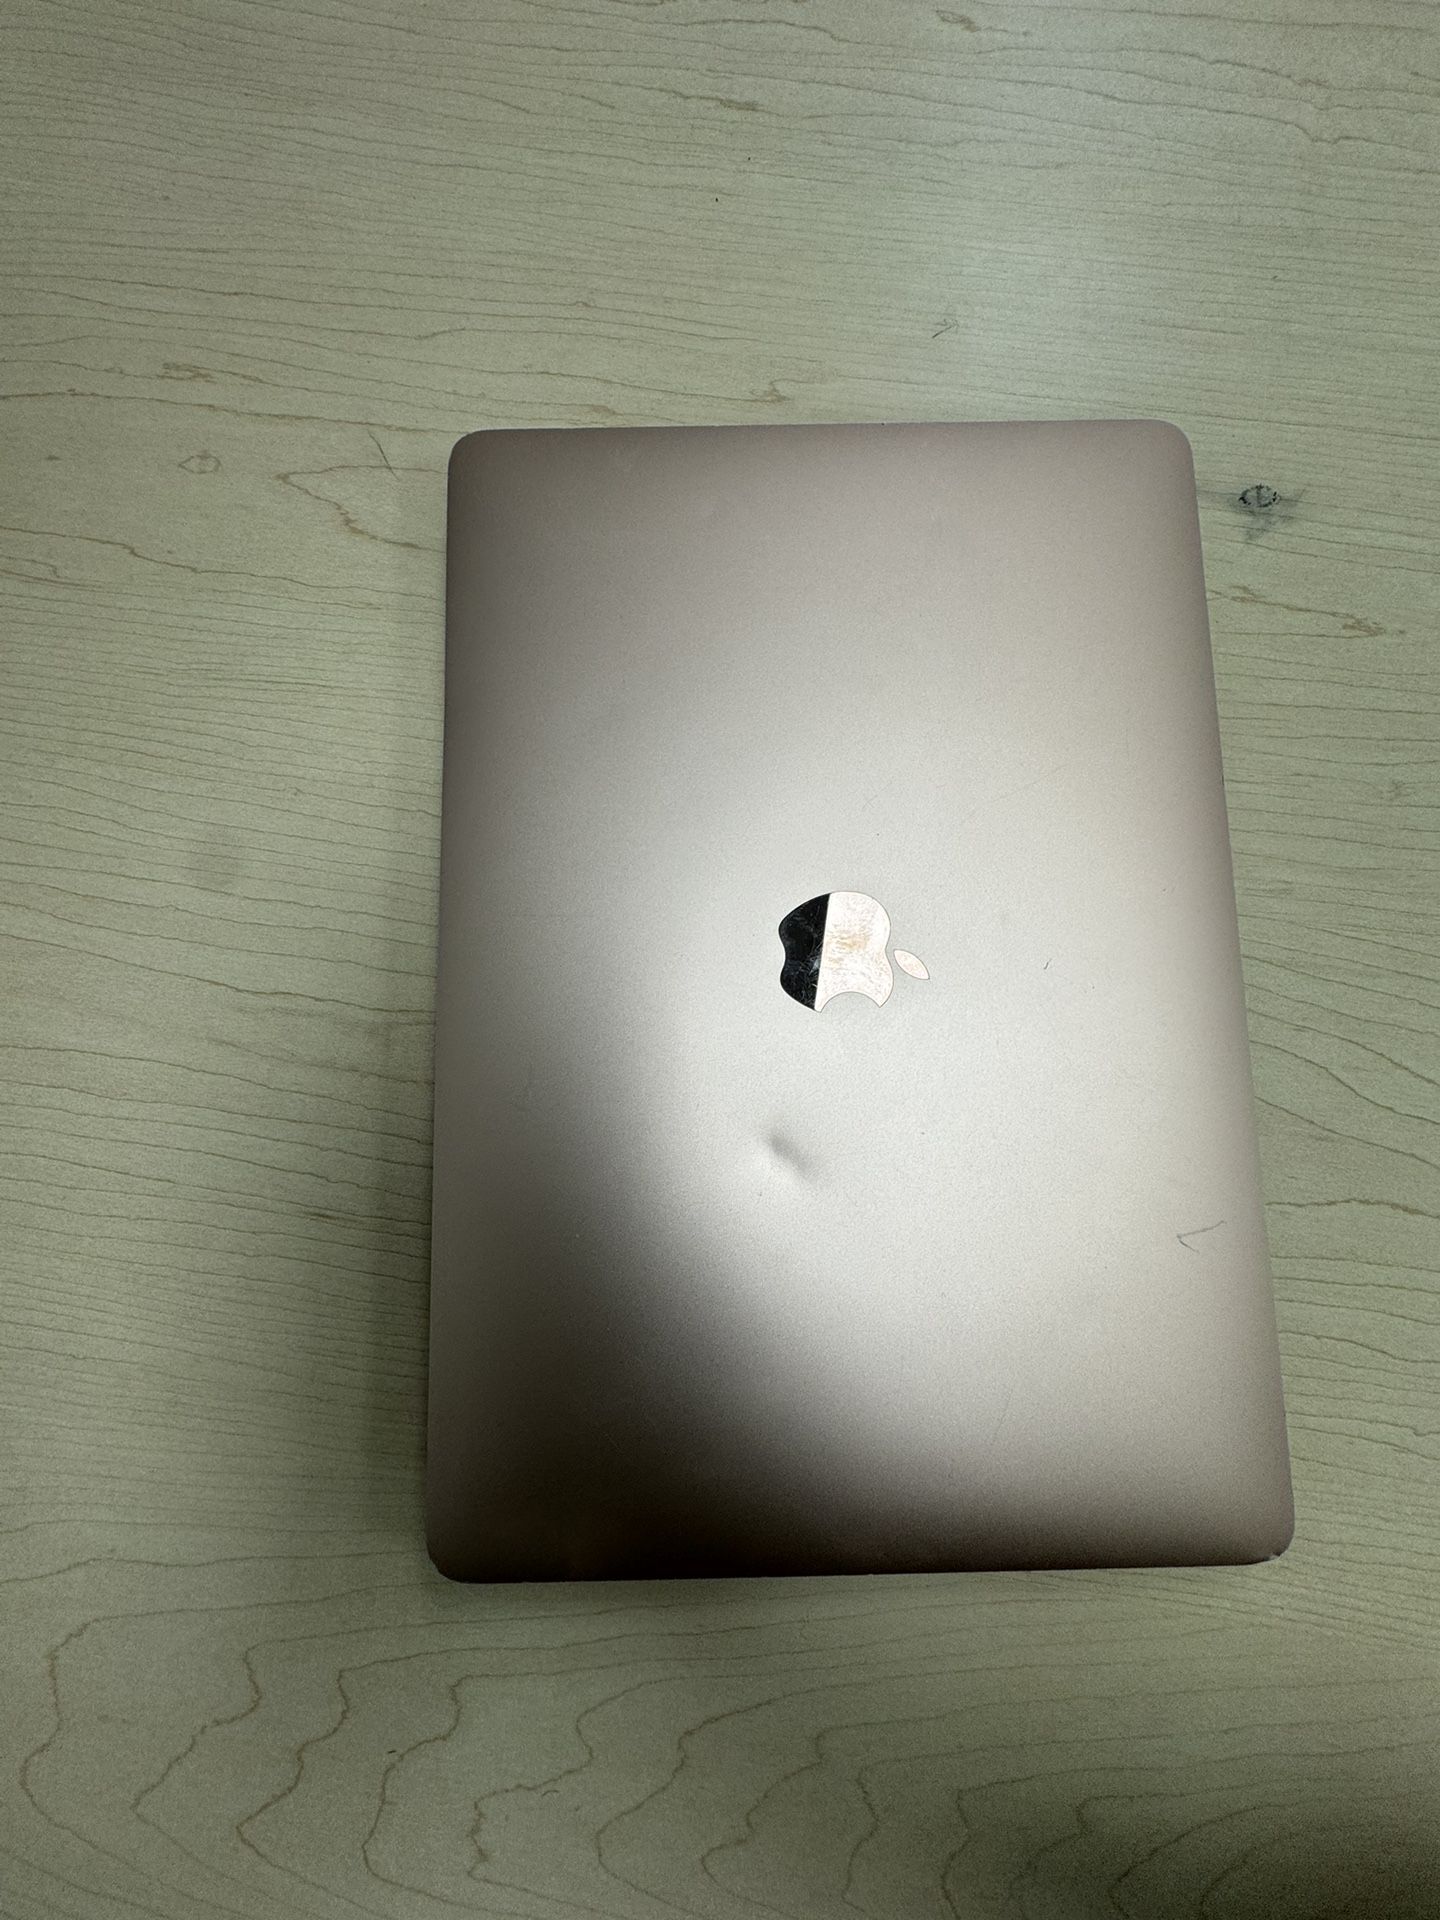 2019 MacBook Air 